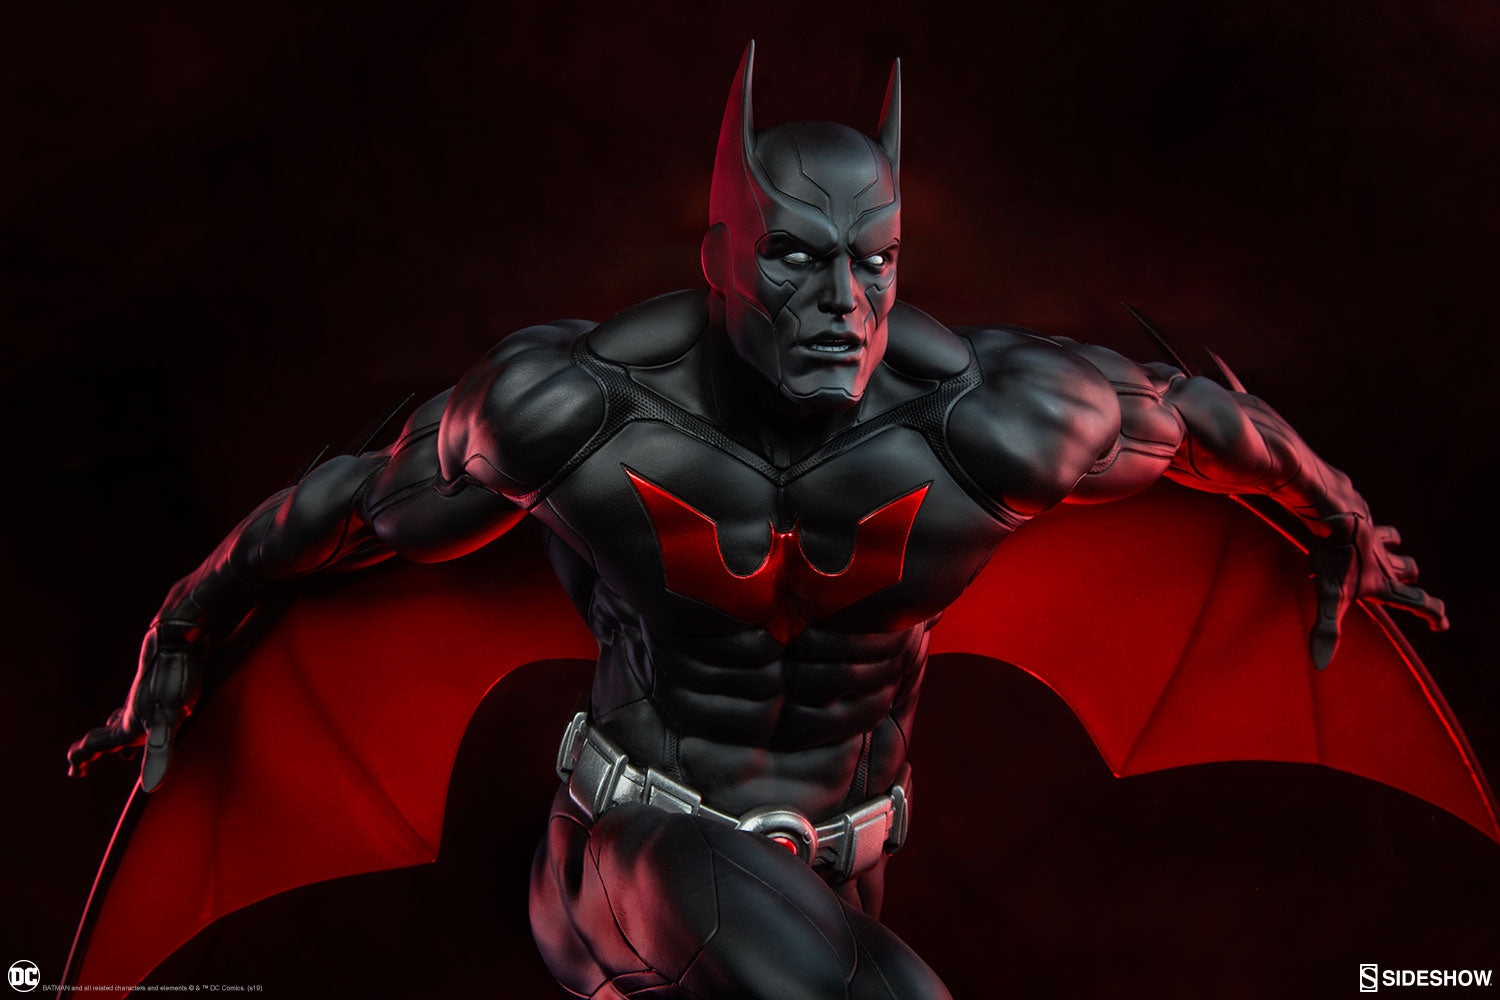 Sideshow Collectibles - Premium Format Figure - DC Comics - Batman Beyond - Marvelous Toys